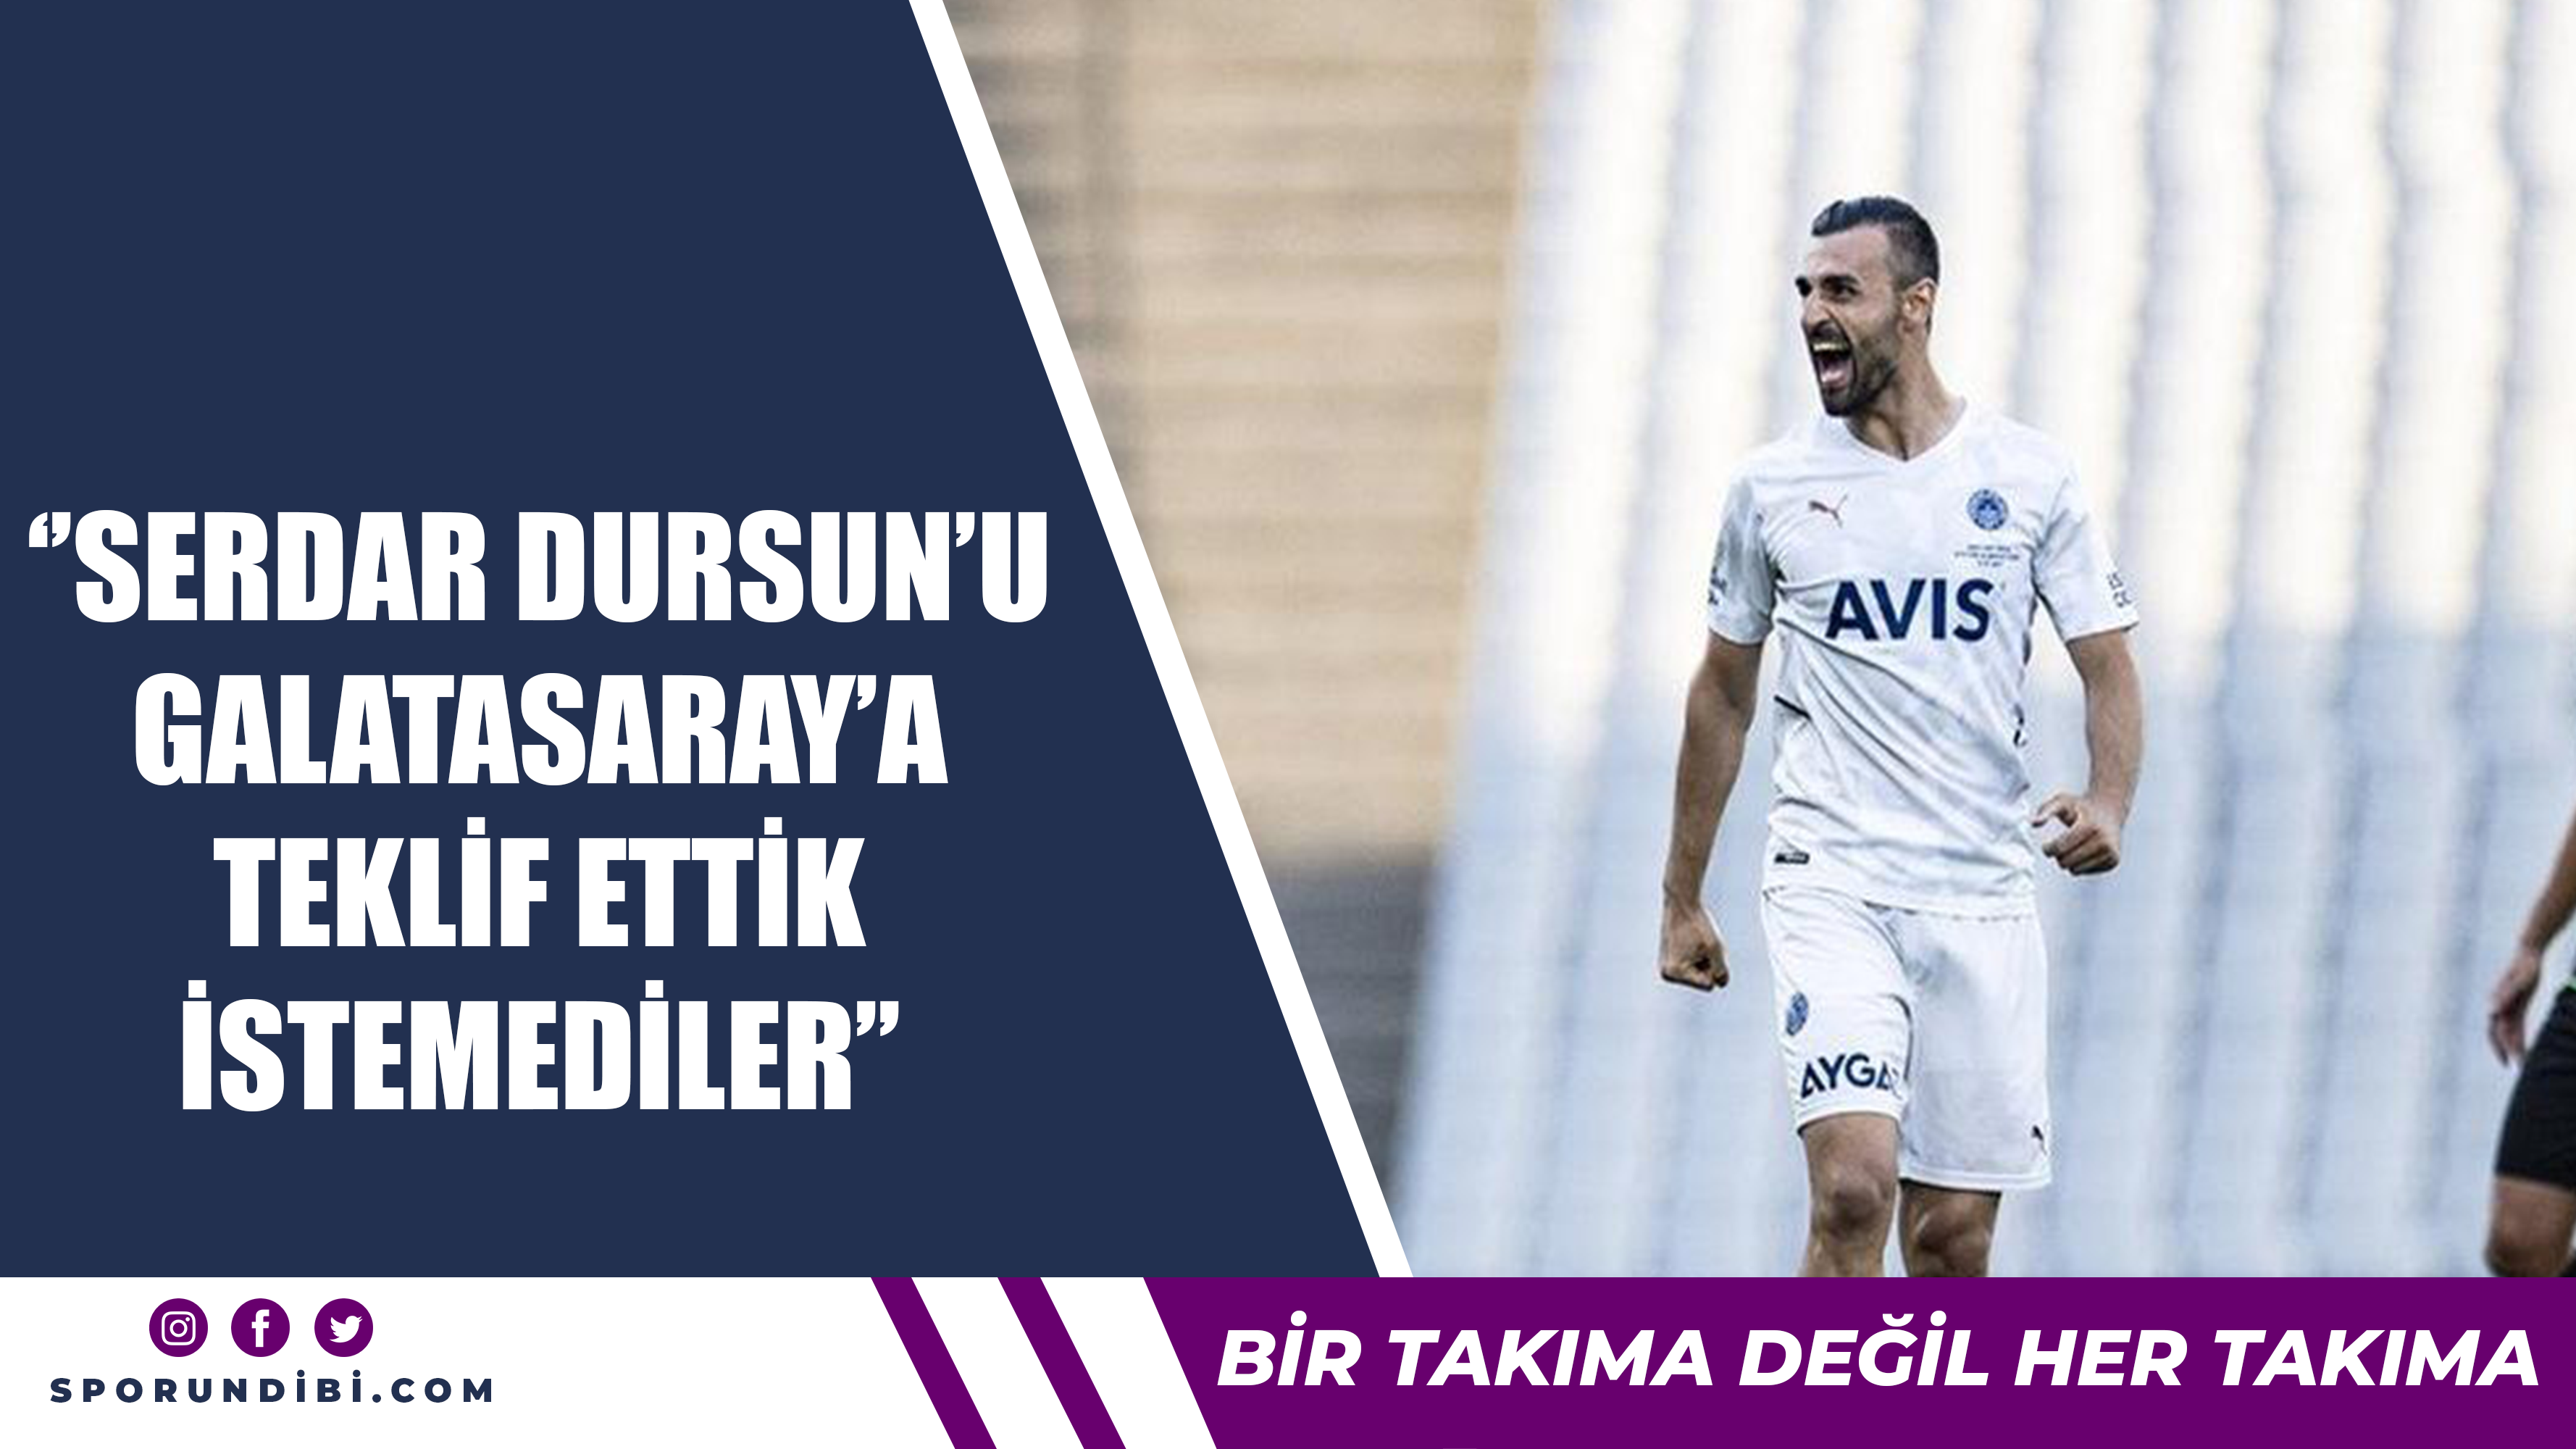 ''Serdar Dursun'u Galatasaray'a teklif ettik istemediler''